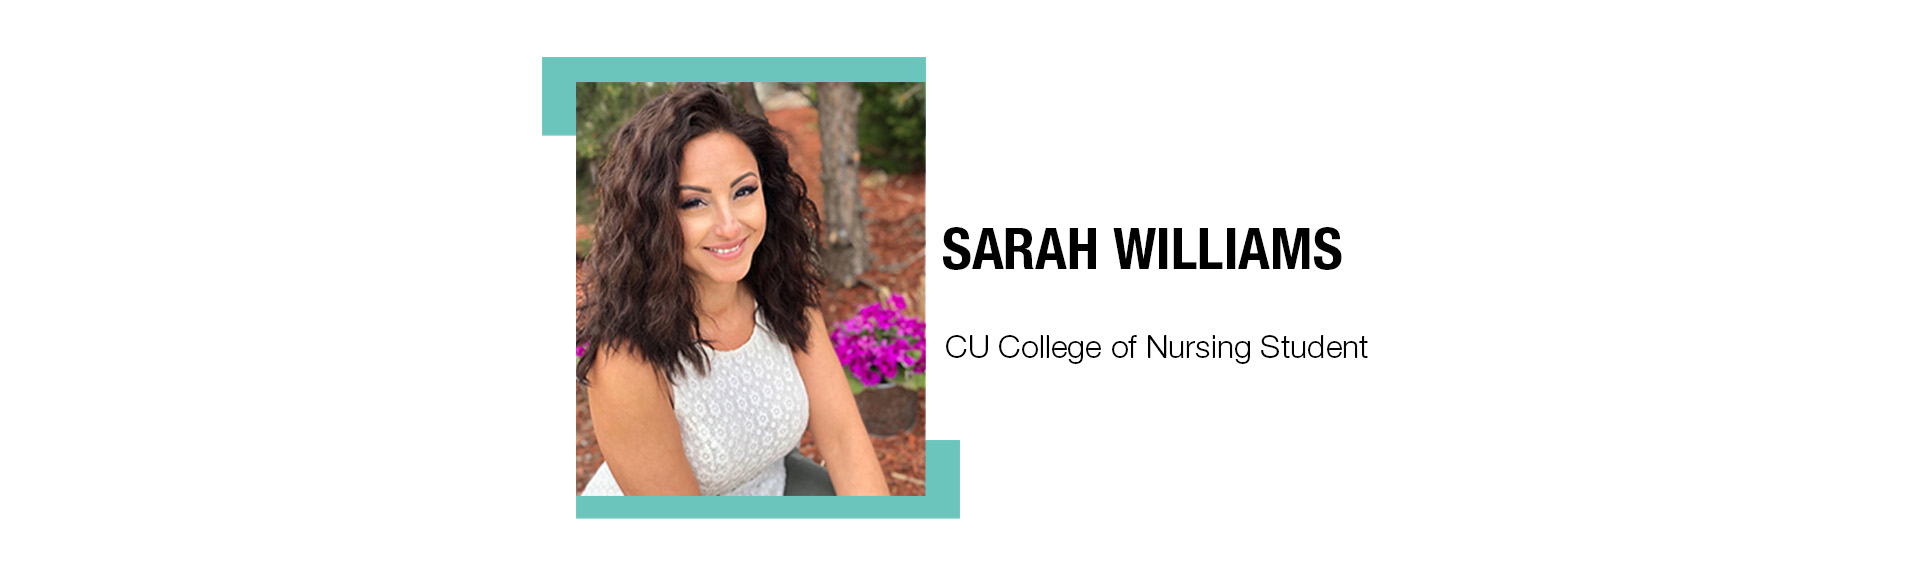 Sarah Williams, CU College of Nursing Student